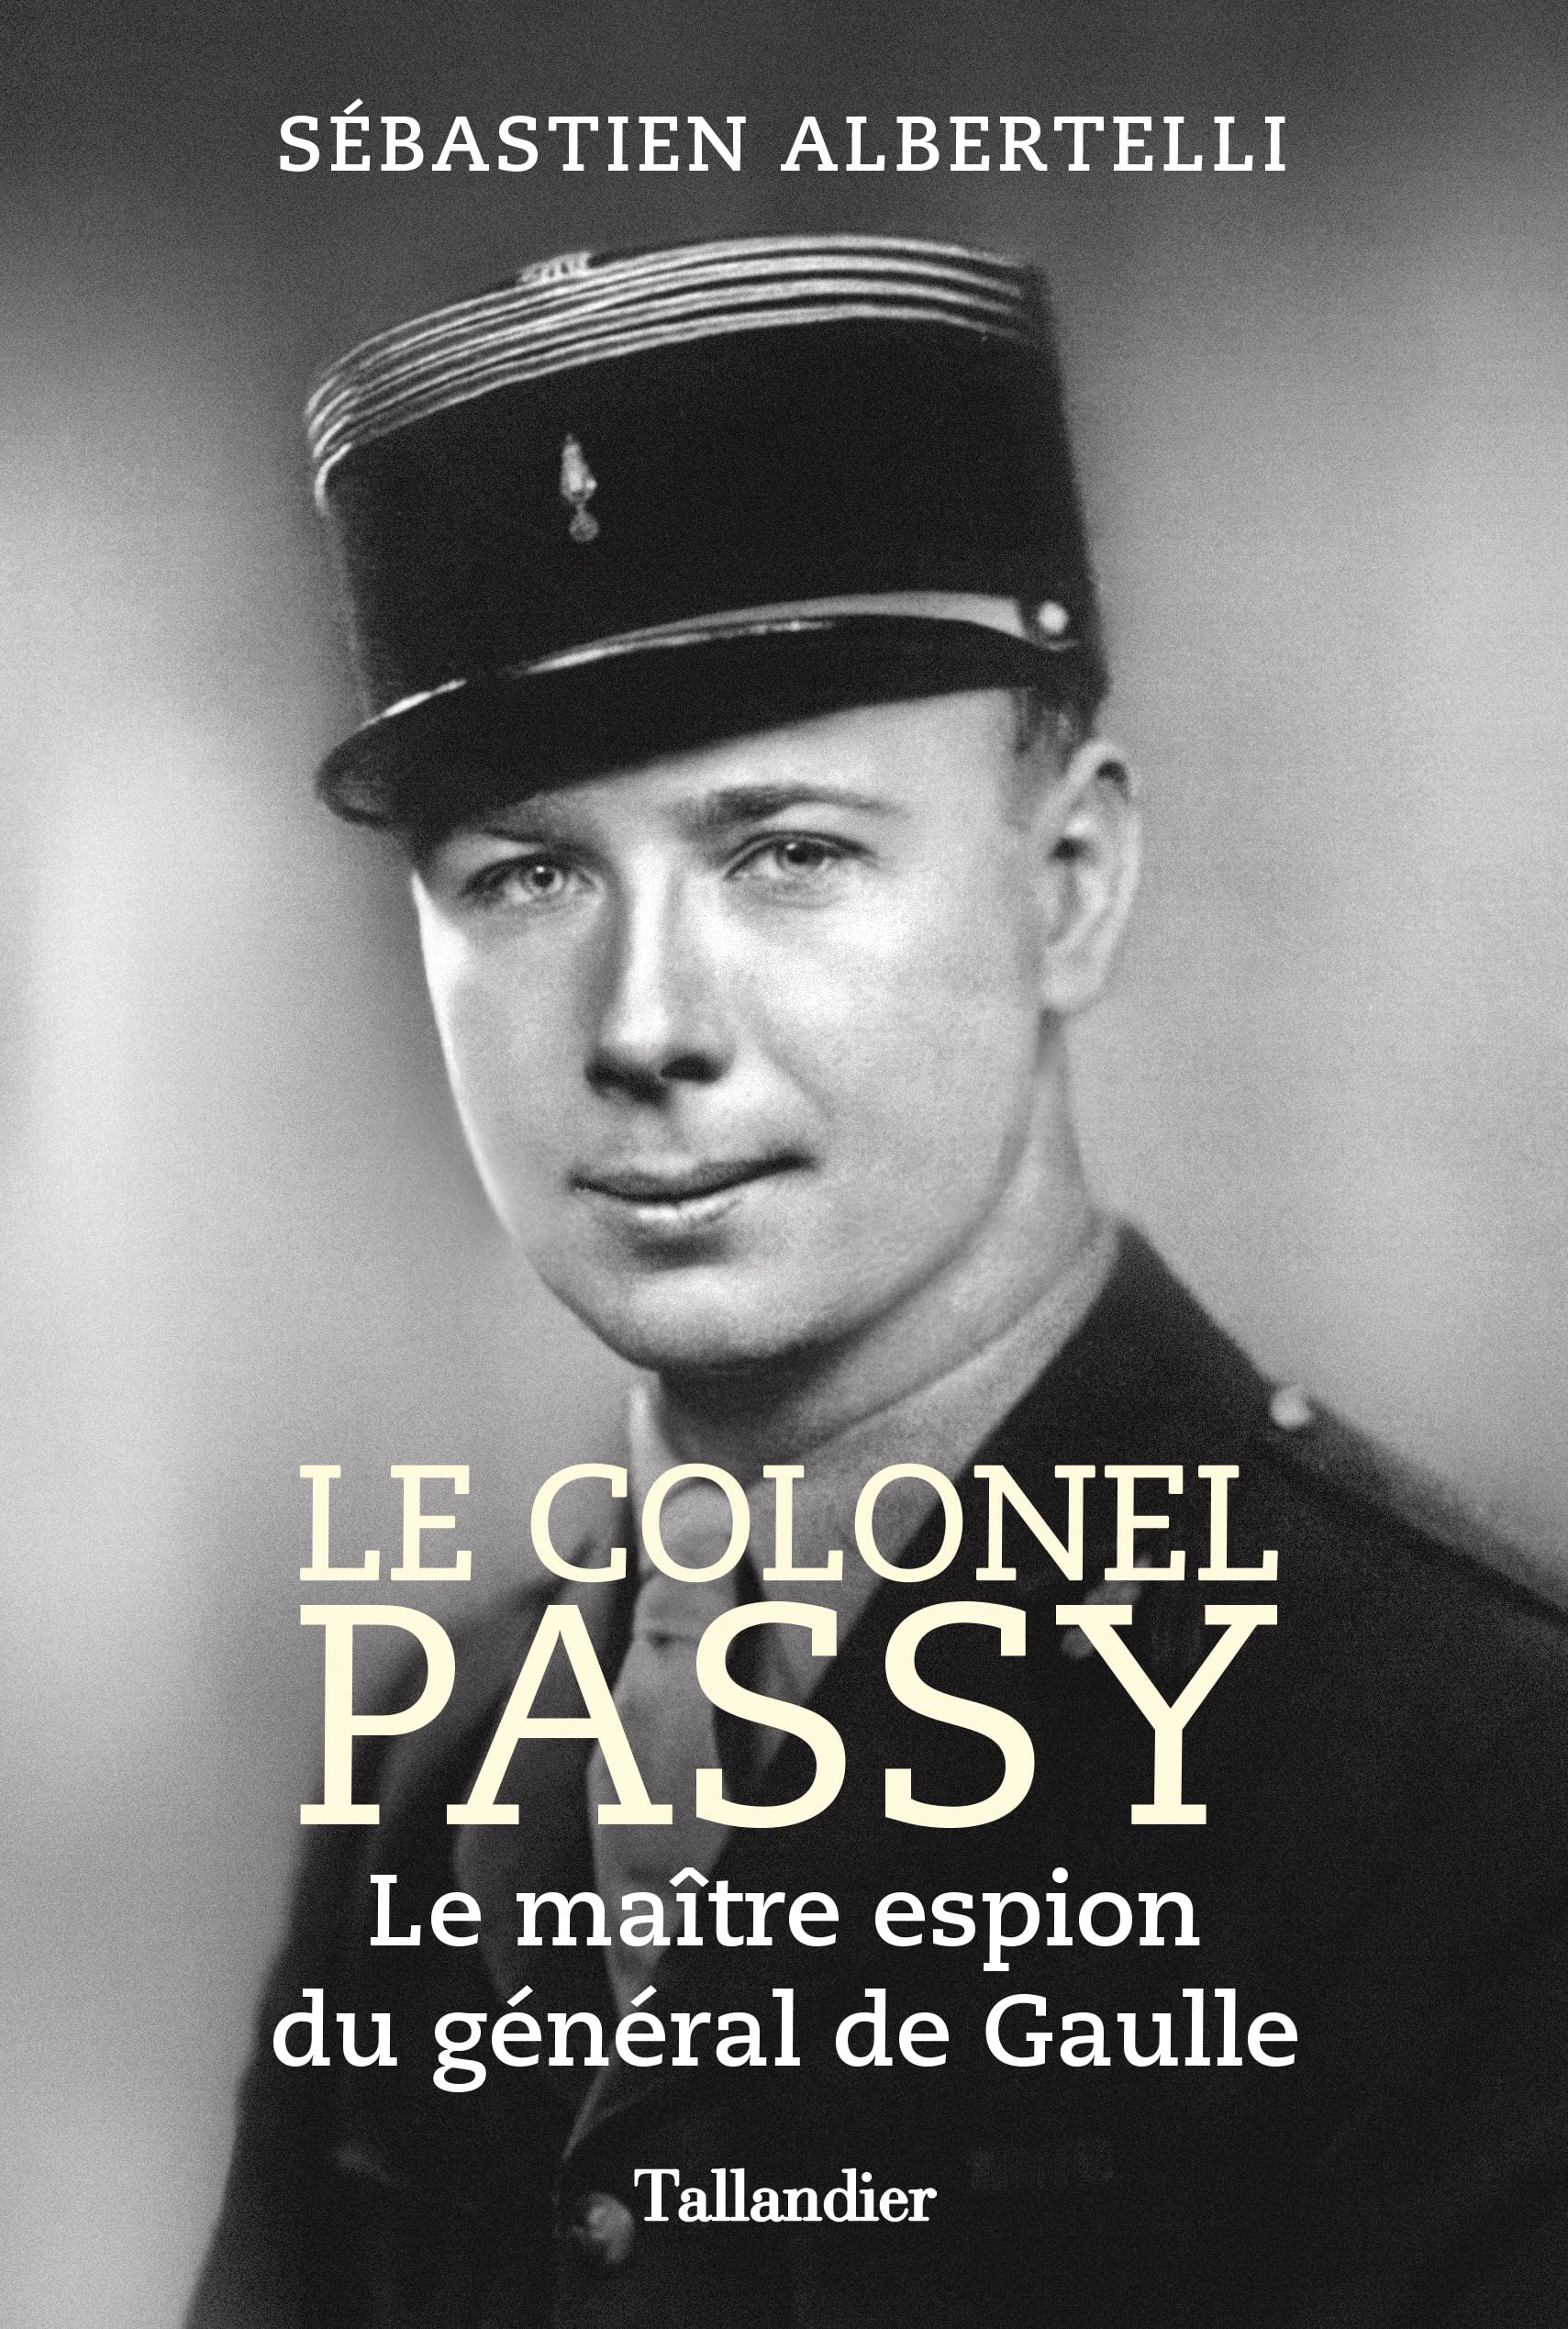 Le colonel Passy: Le maître espion du général de Gaulle